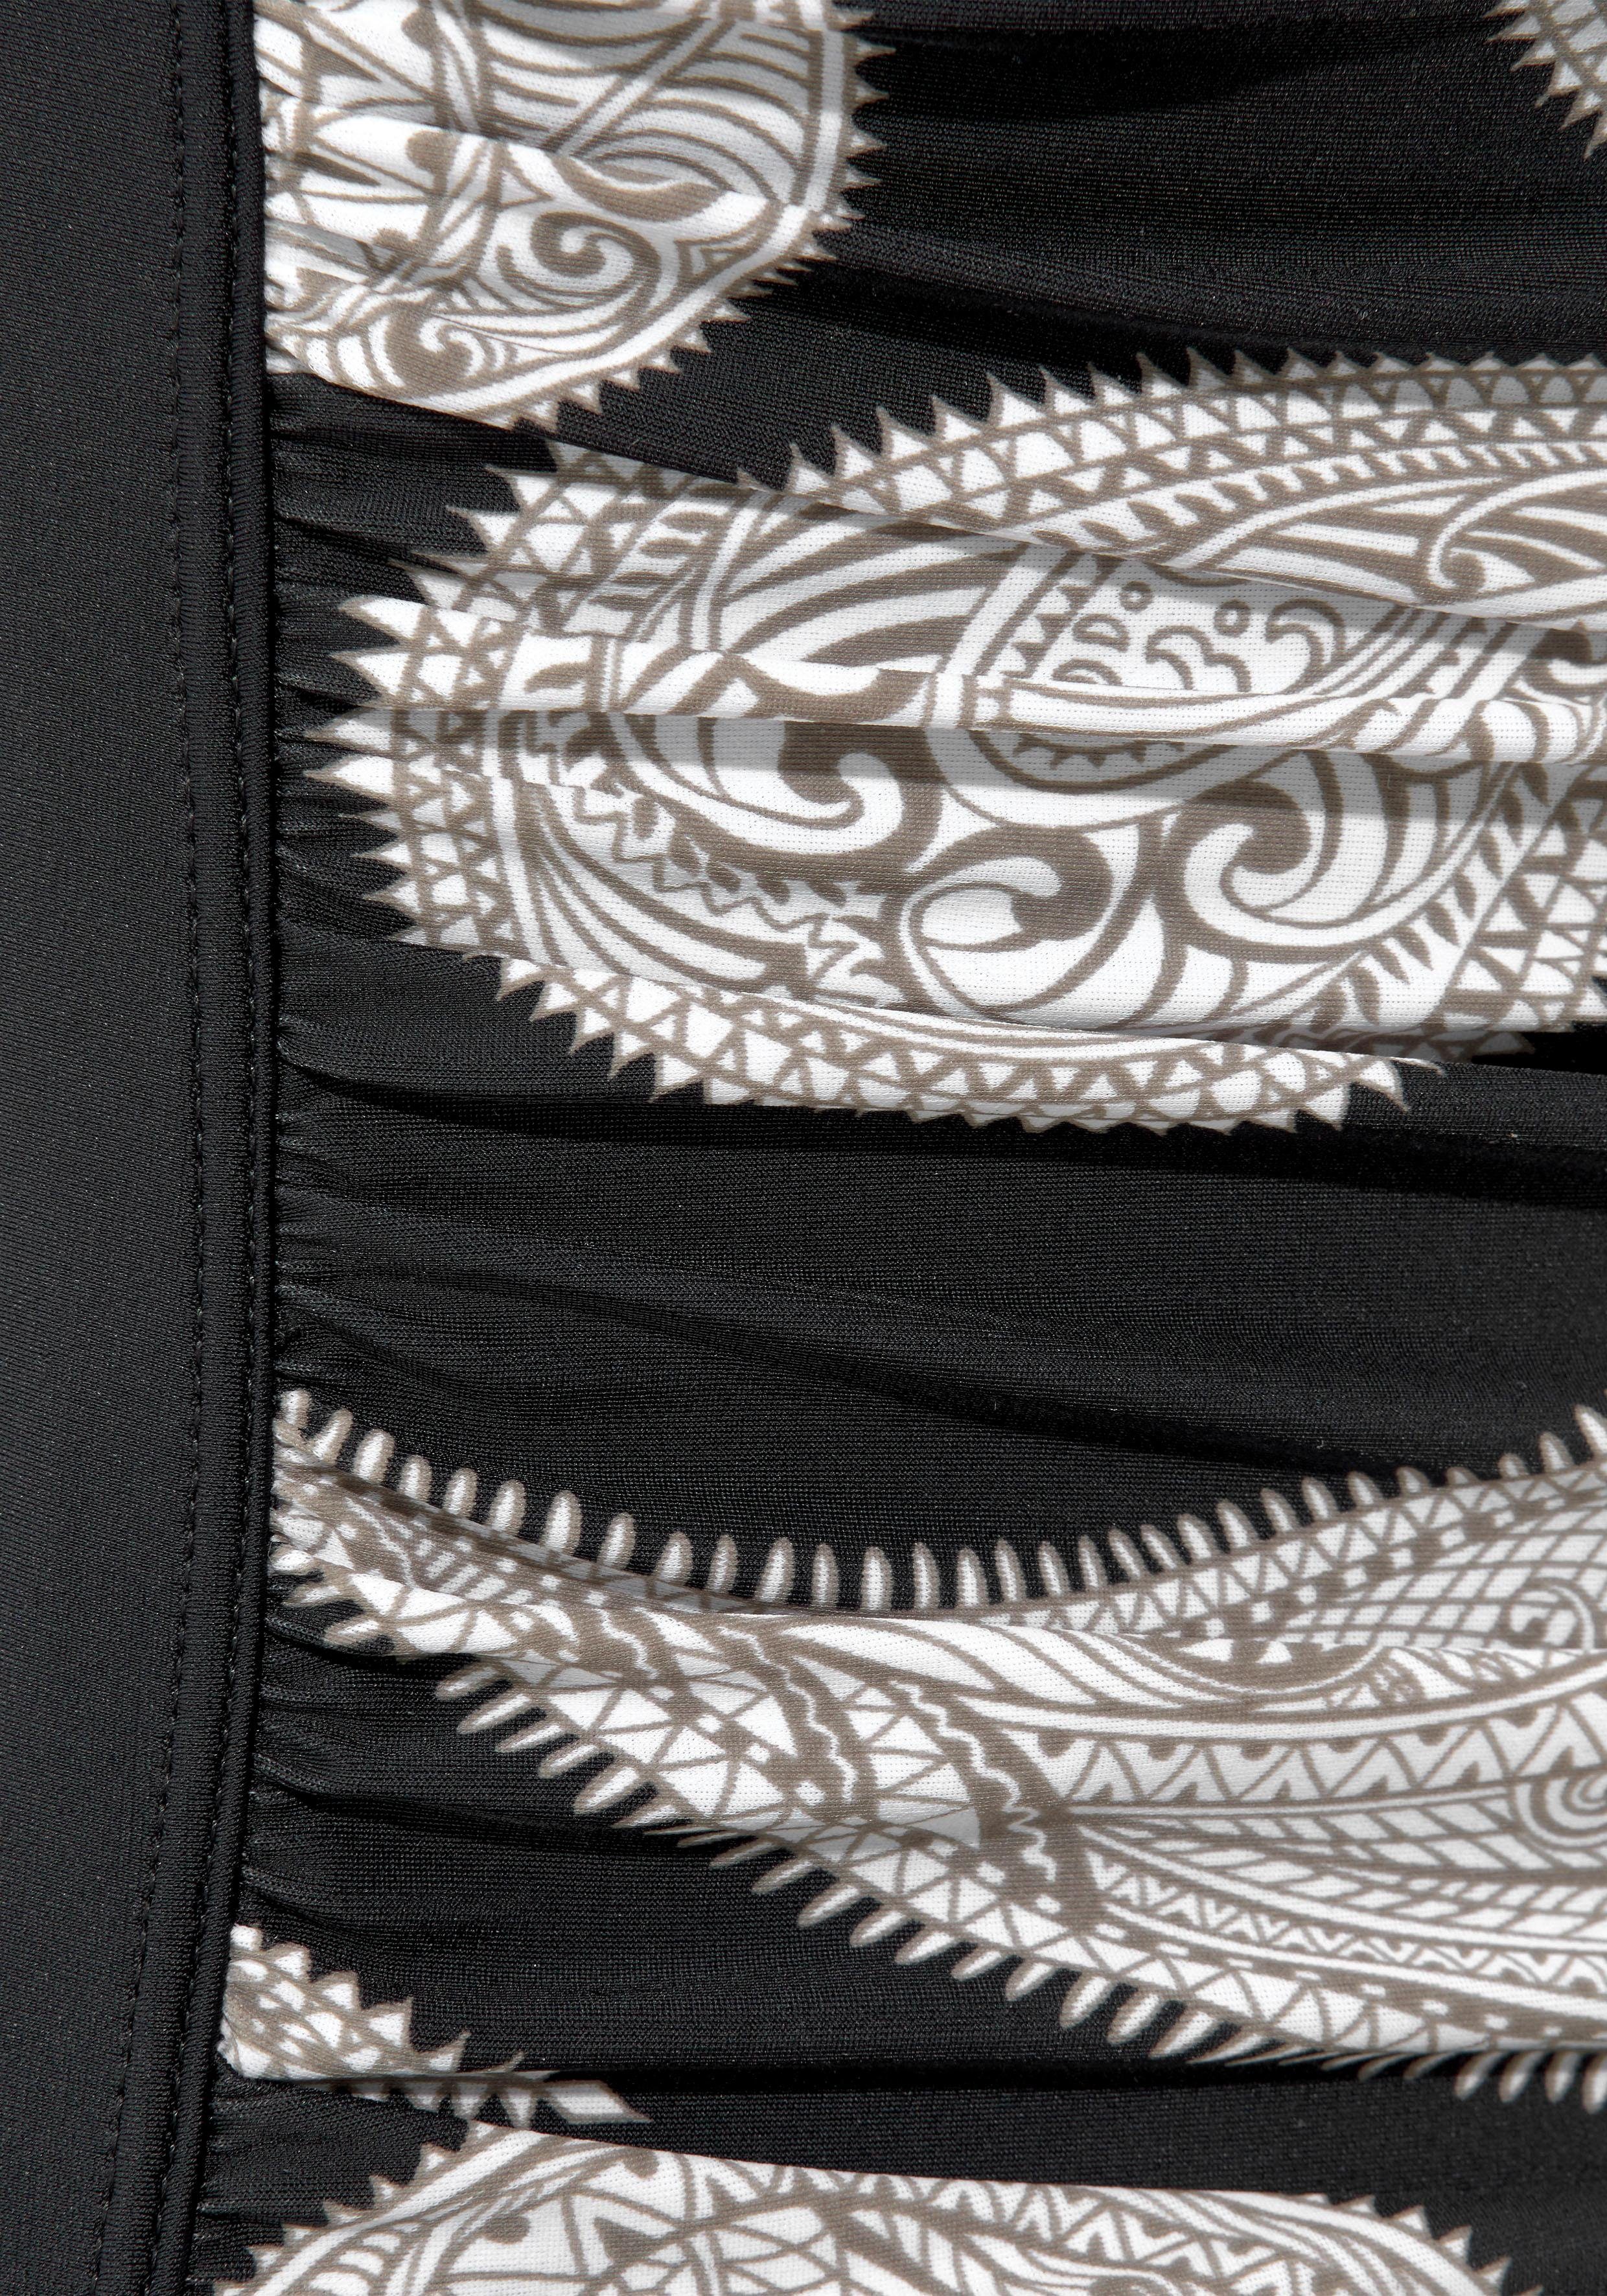 Badeanzug schwarz-bedruckt LASCANA Floralprint im modischen Shaping-Effekt mit